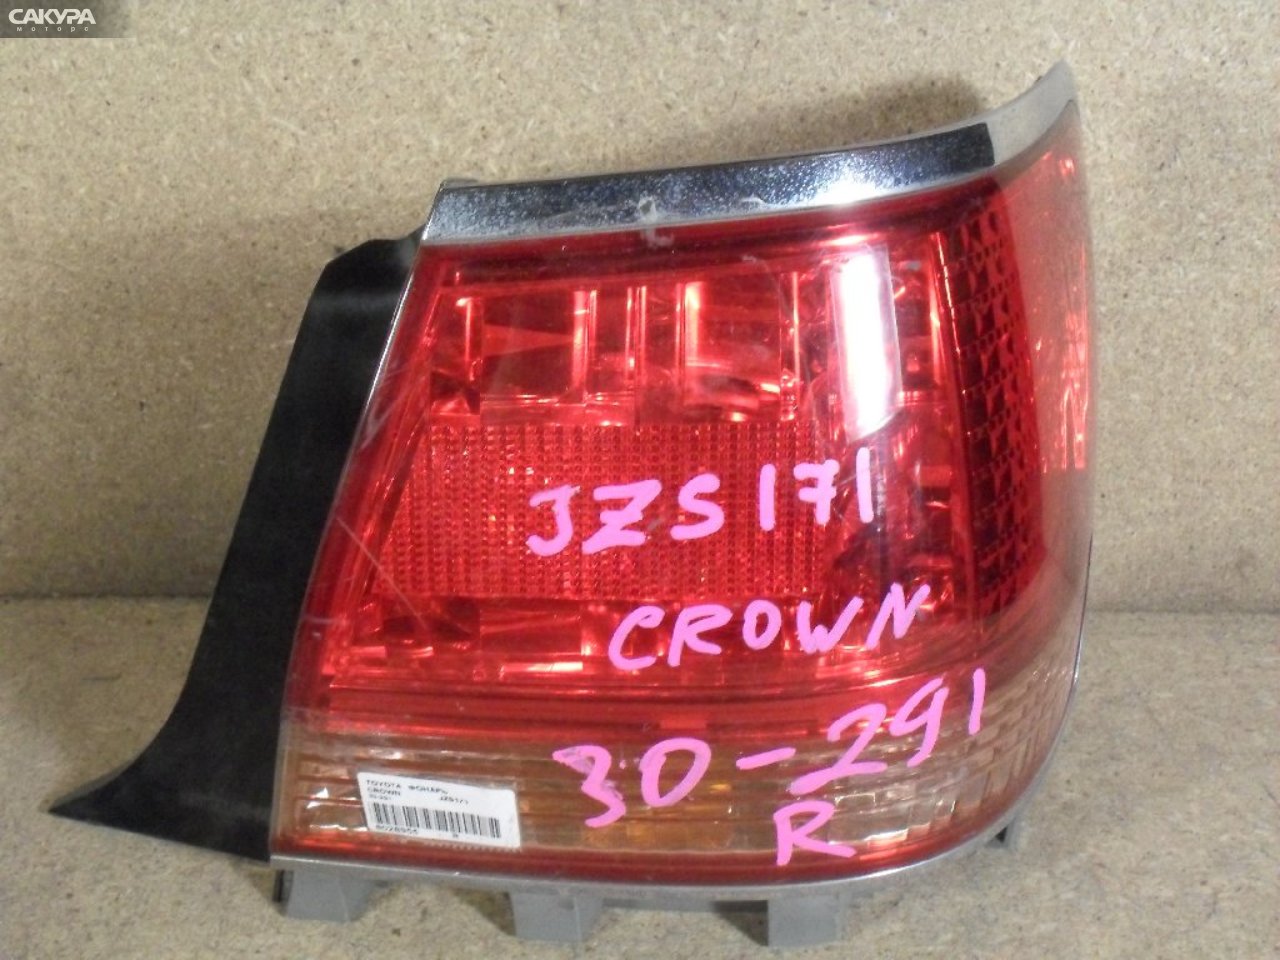 Фонарь стоп-сигнала правый Toyota Crown JZS171 30-291: купить в Сакура Абакан.